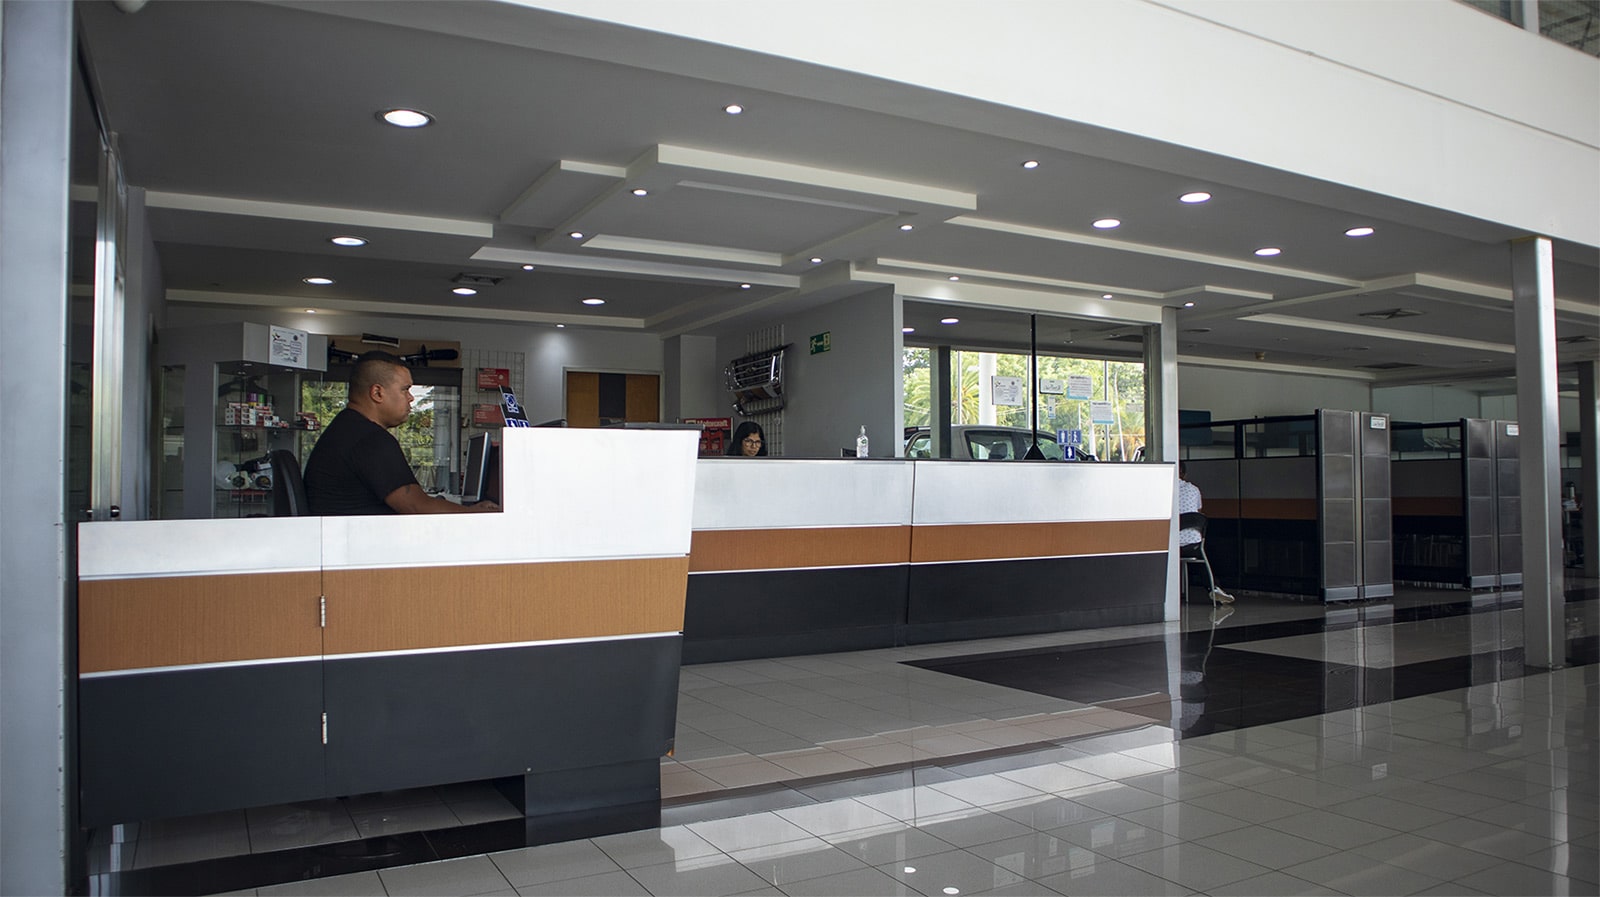 Auto Plaza es atención personalizada, asesoramiento profesional y servicio especializado para tu vehículo Ford